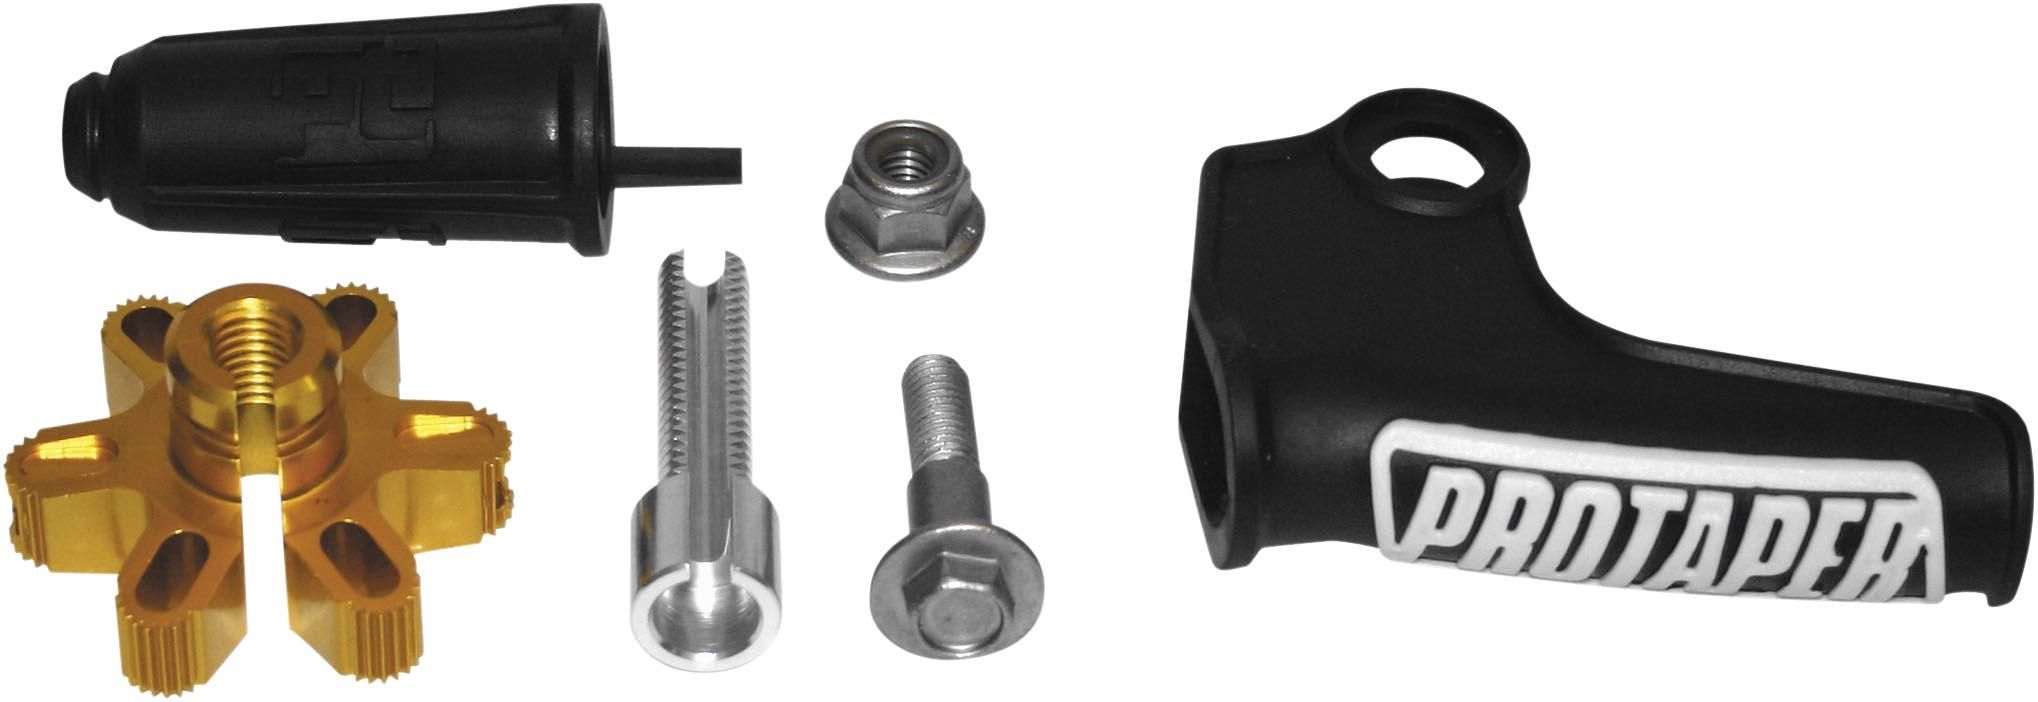 3OI3-PROTAPER-02-4093 Profile Pro Clutch Perch Parts Kit